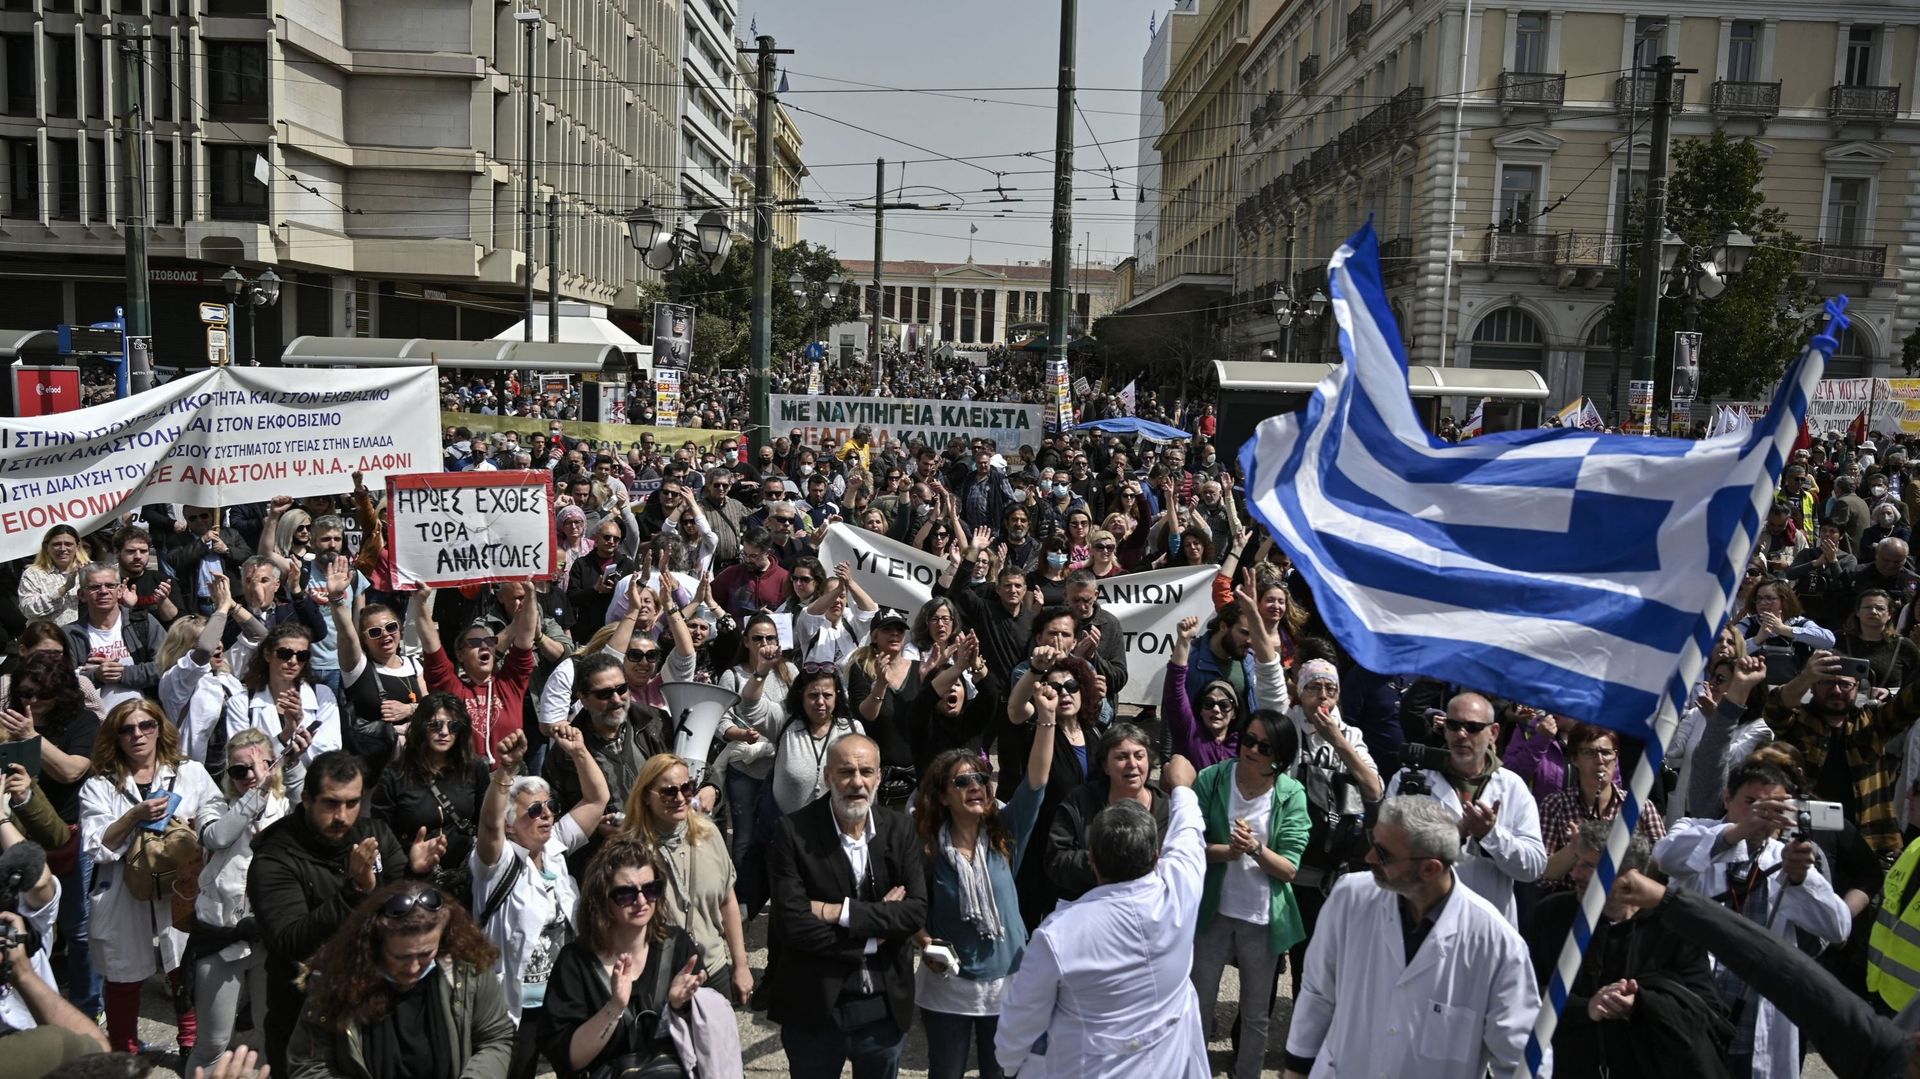 Des manifestants participent à un rassemblement contre la hausse des prix et réclament une augmentation des salaires pendant une grève générale de 24 heures, à Athènes, le 6 avril 2022.